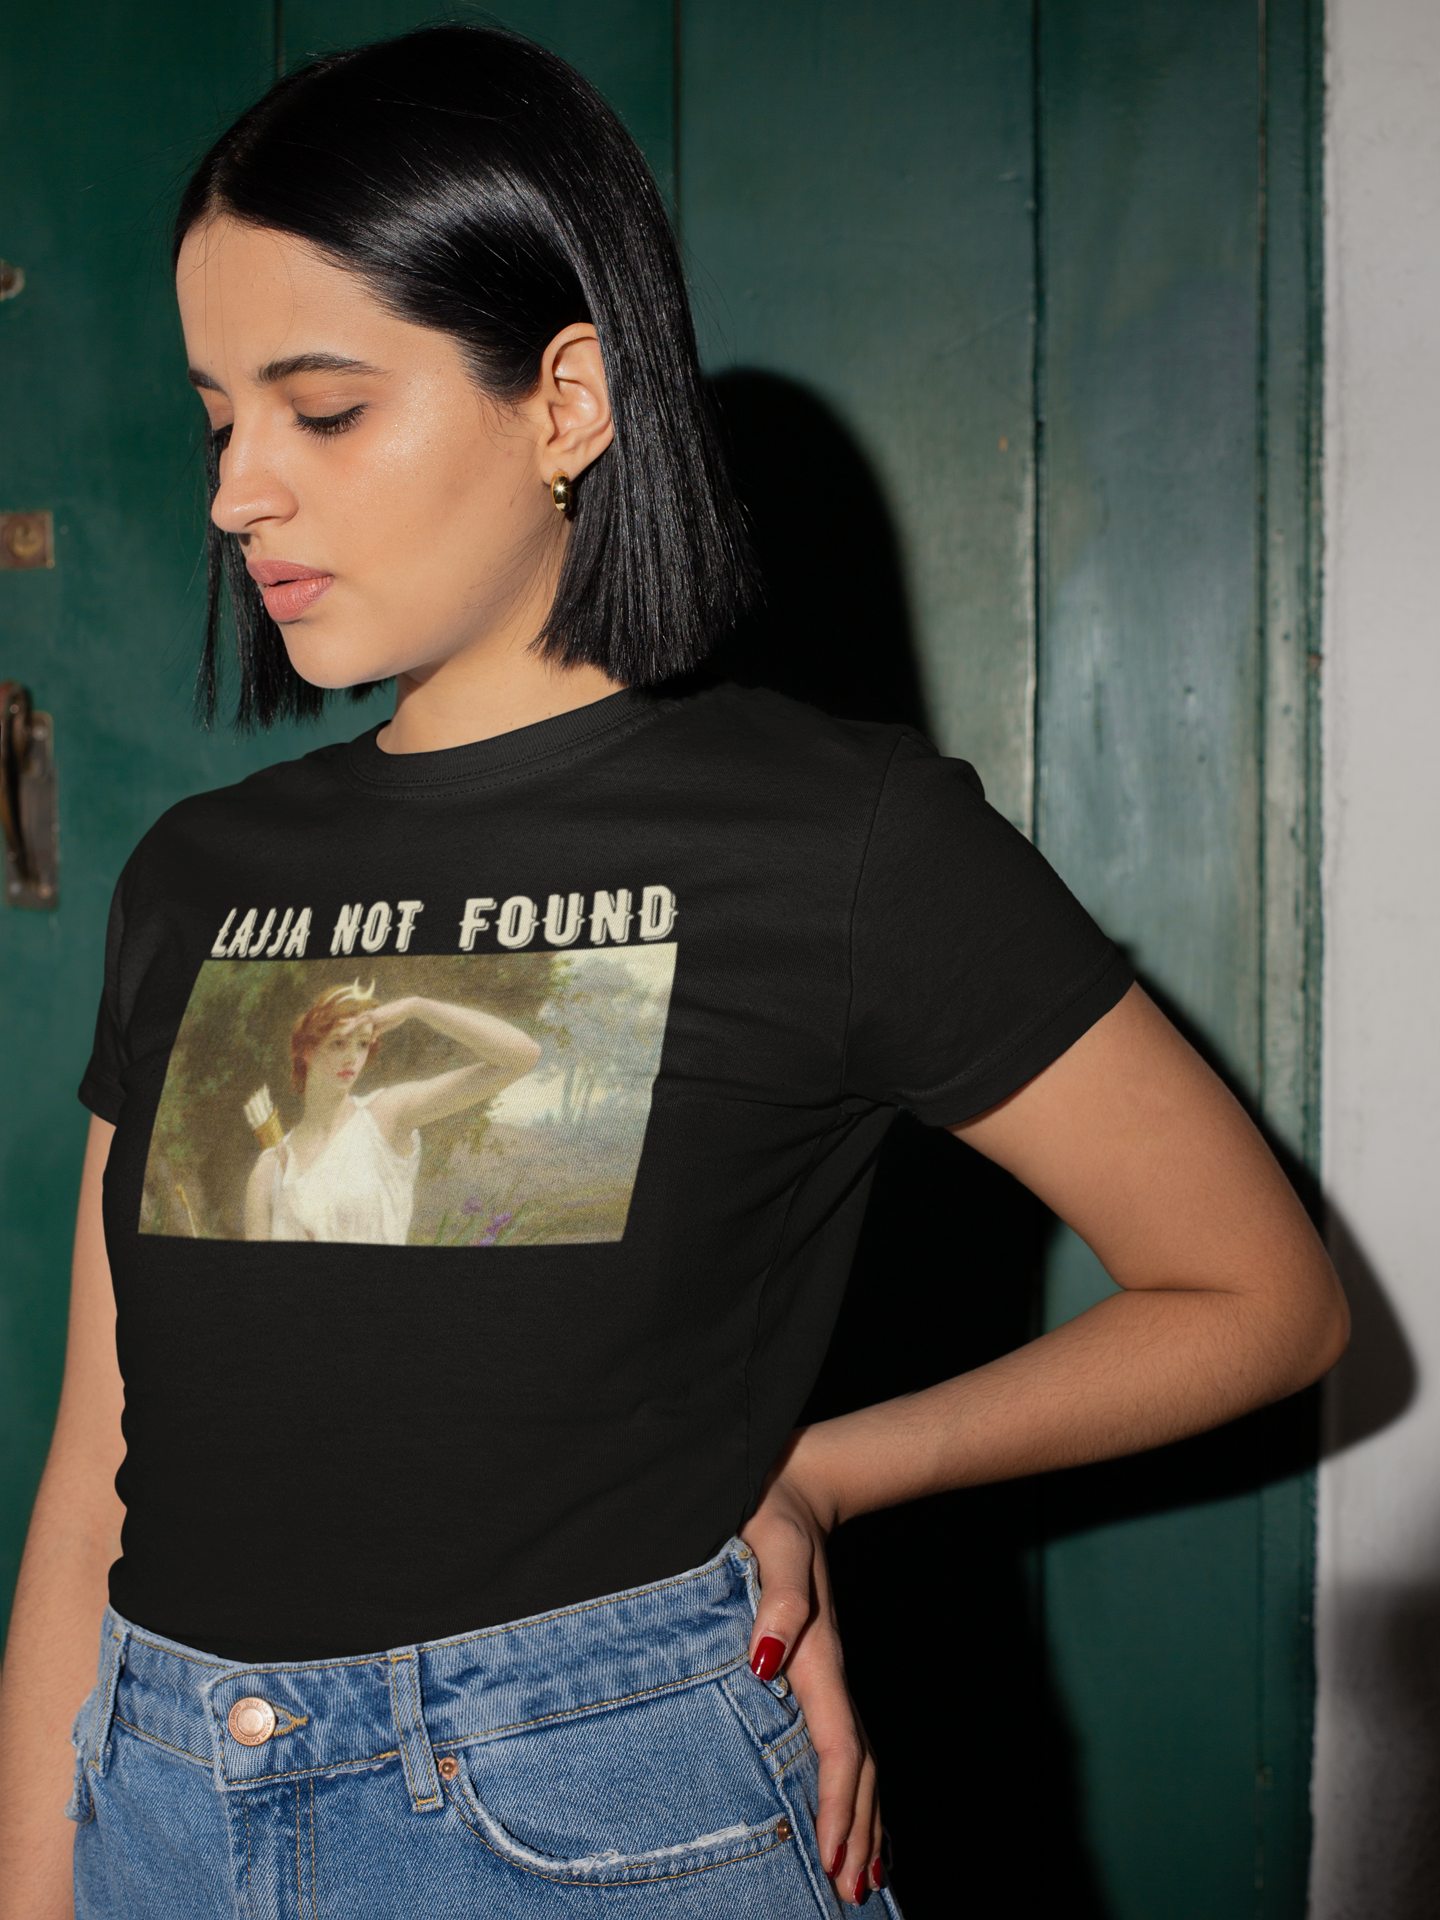 Lajja Not Found Women's T-shirt - Ken Adams